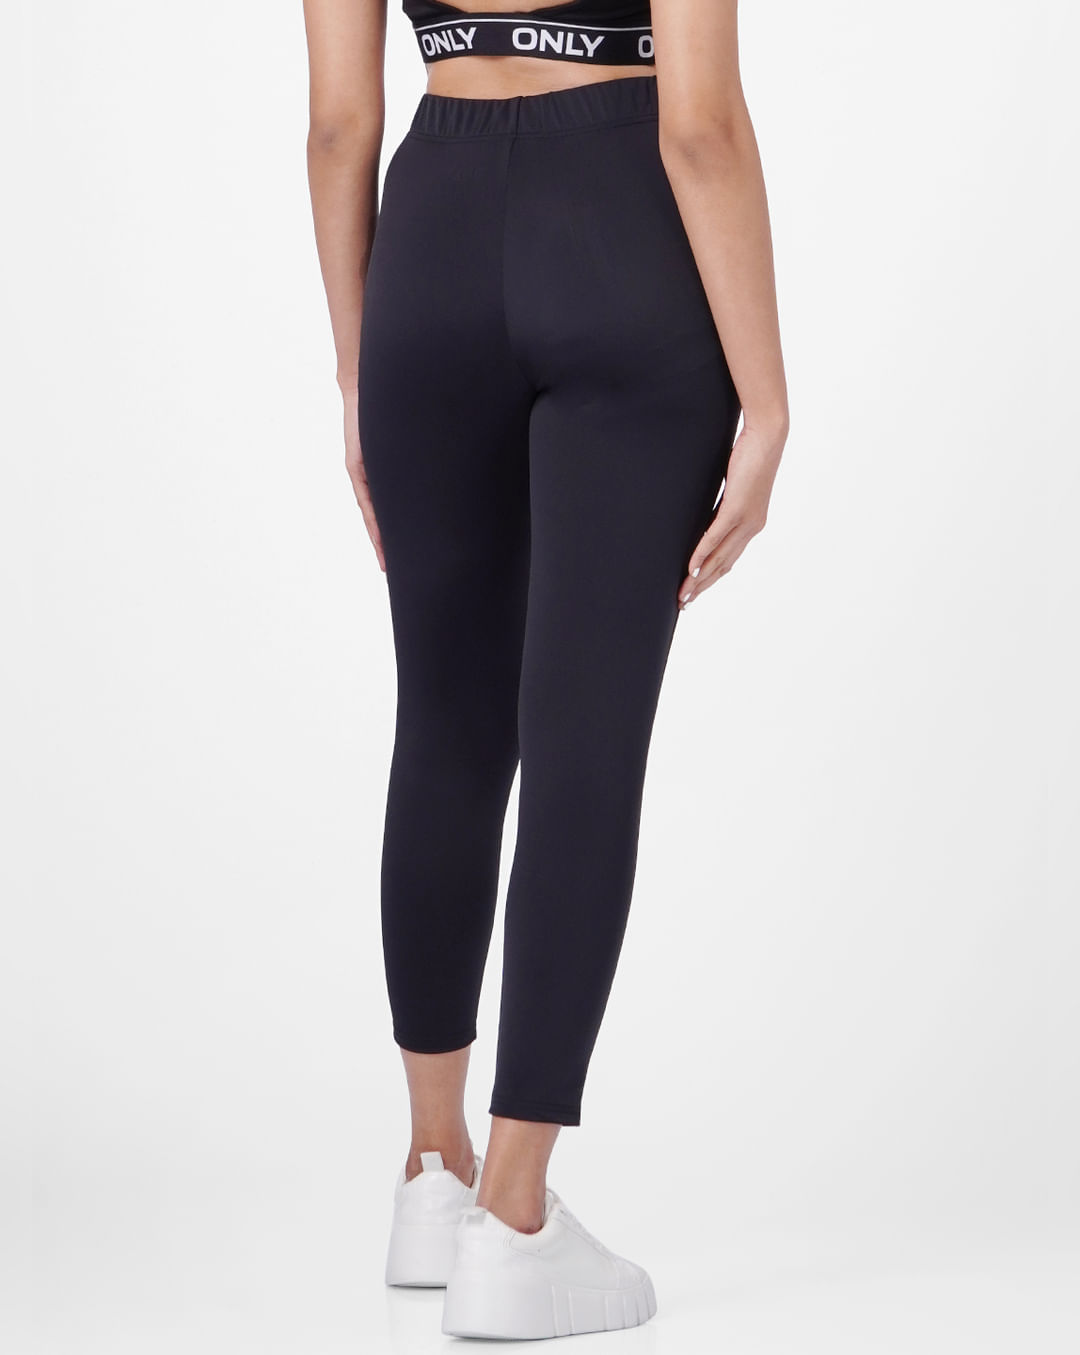 Buy Topshop women skinny fit solid leggings black Online